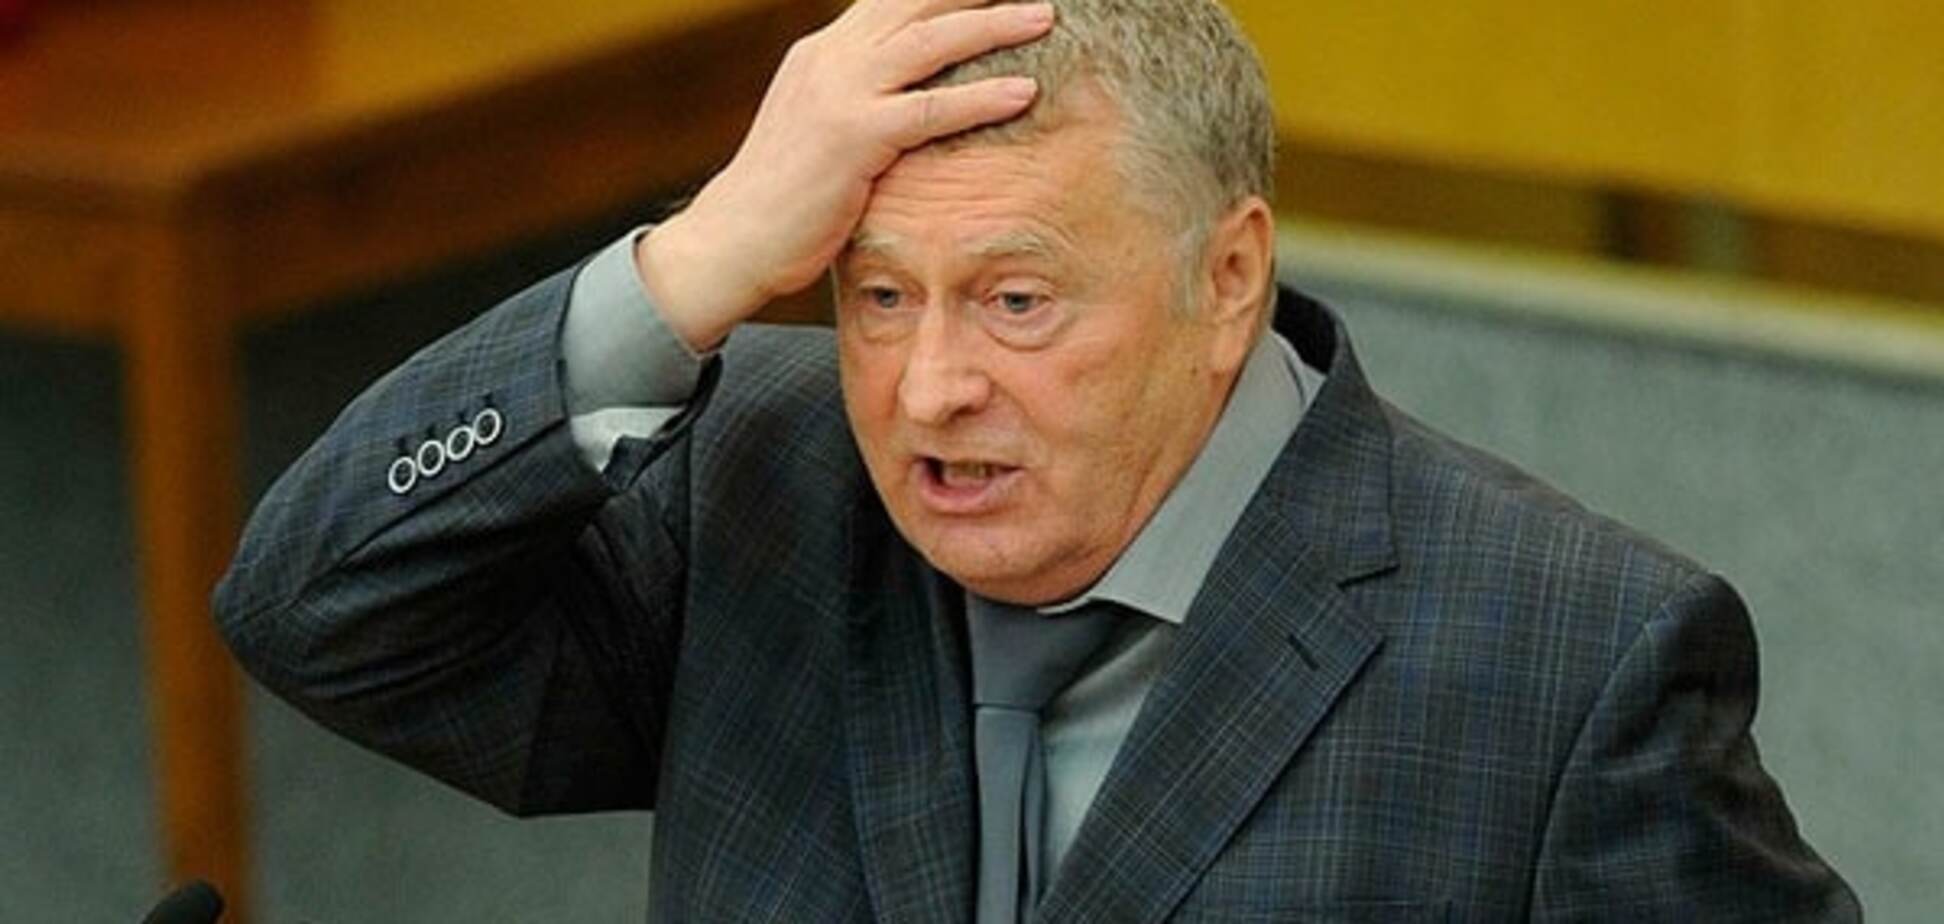 Треба було думати головою: Жириновський засумнівався в профпридатності путінських кадрів